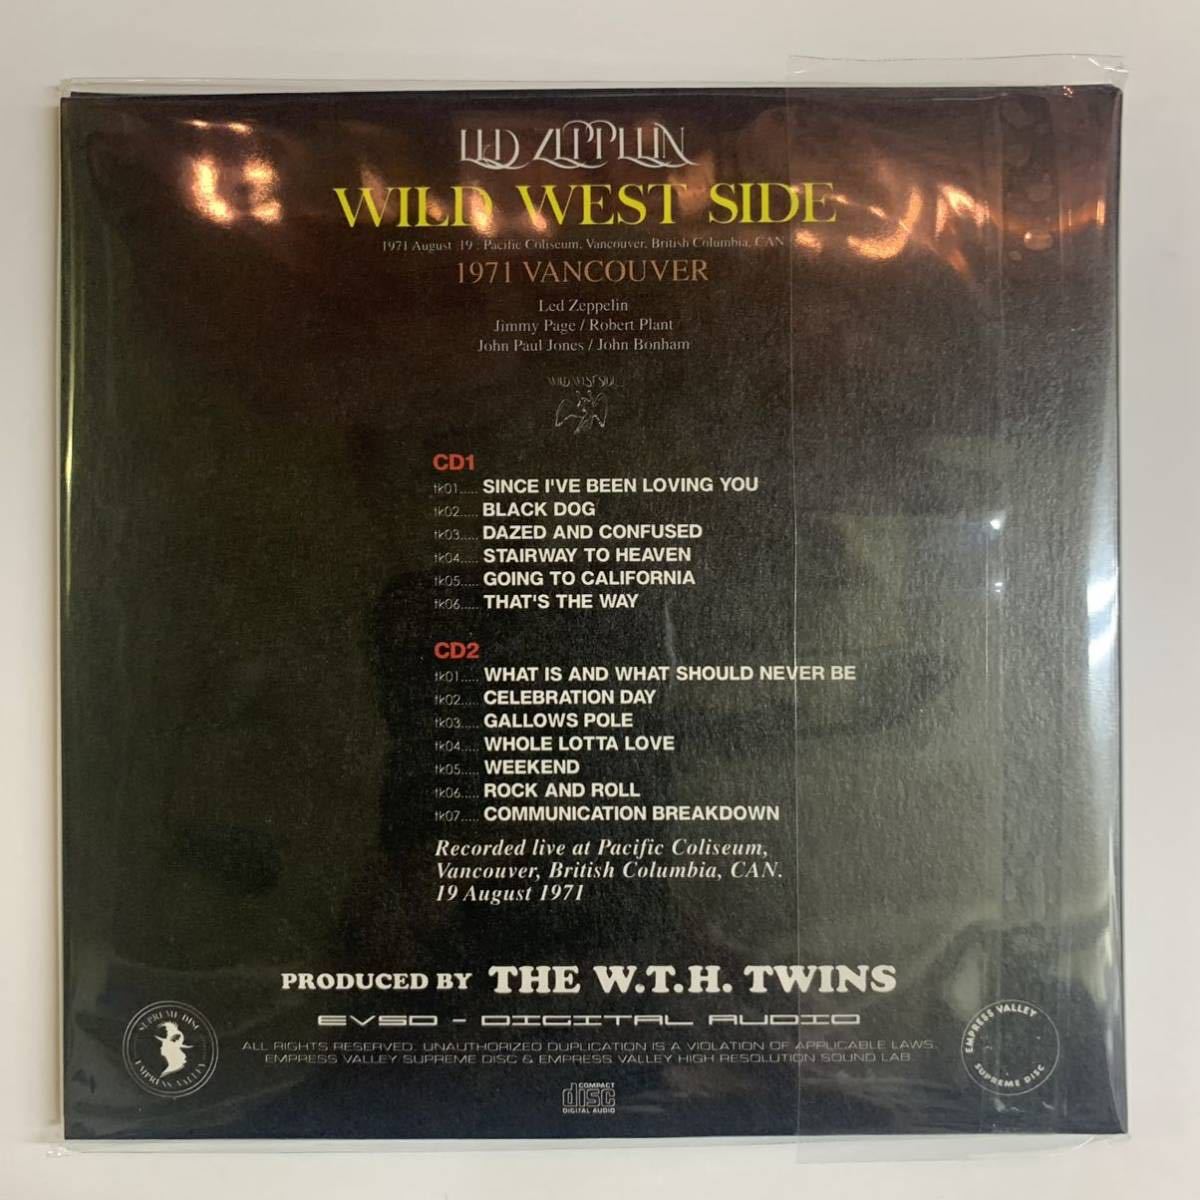 LED ZEPPELIN / WILD WEST SIDE 1971 Vancouver 2CD Standard Edition Empress Valley Supreme disk 世界初登場音源！編集前オリジナル版_画像2